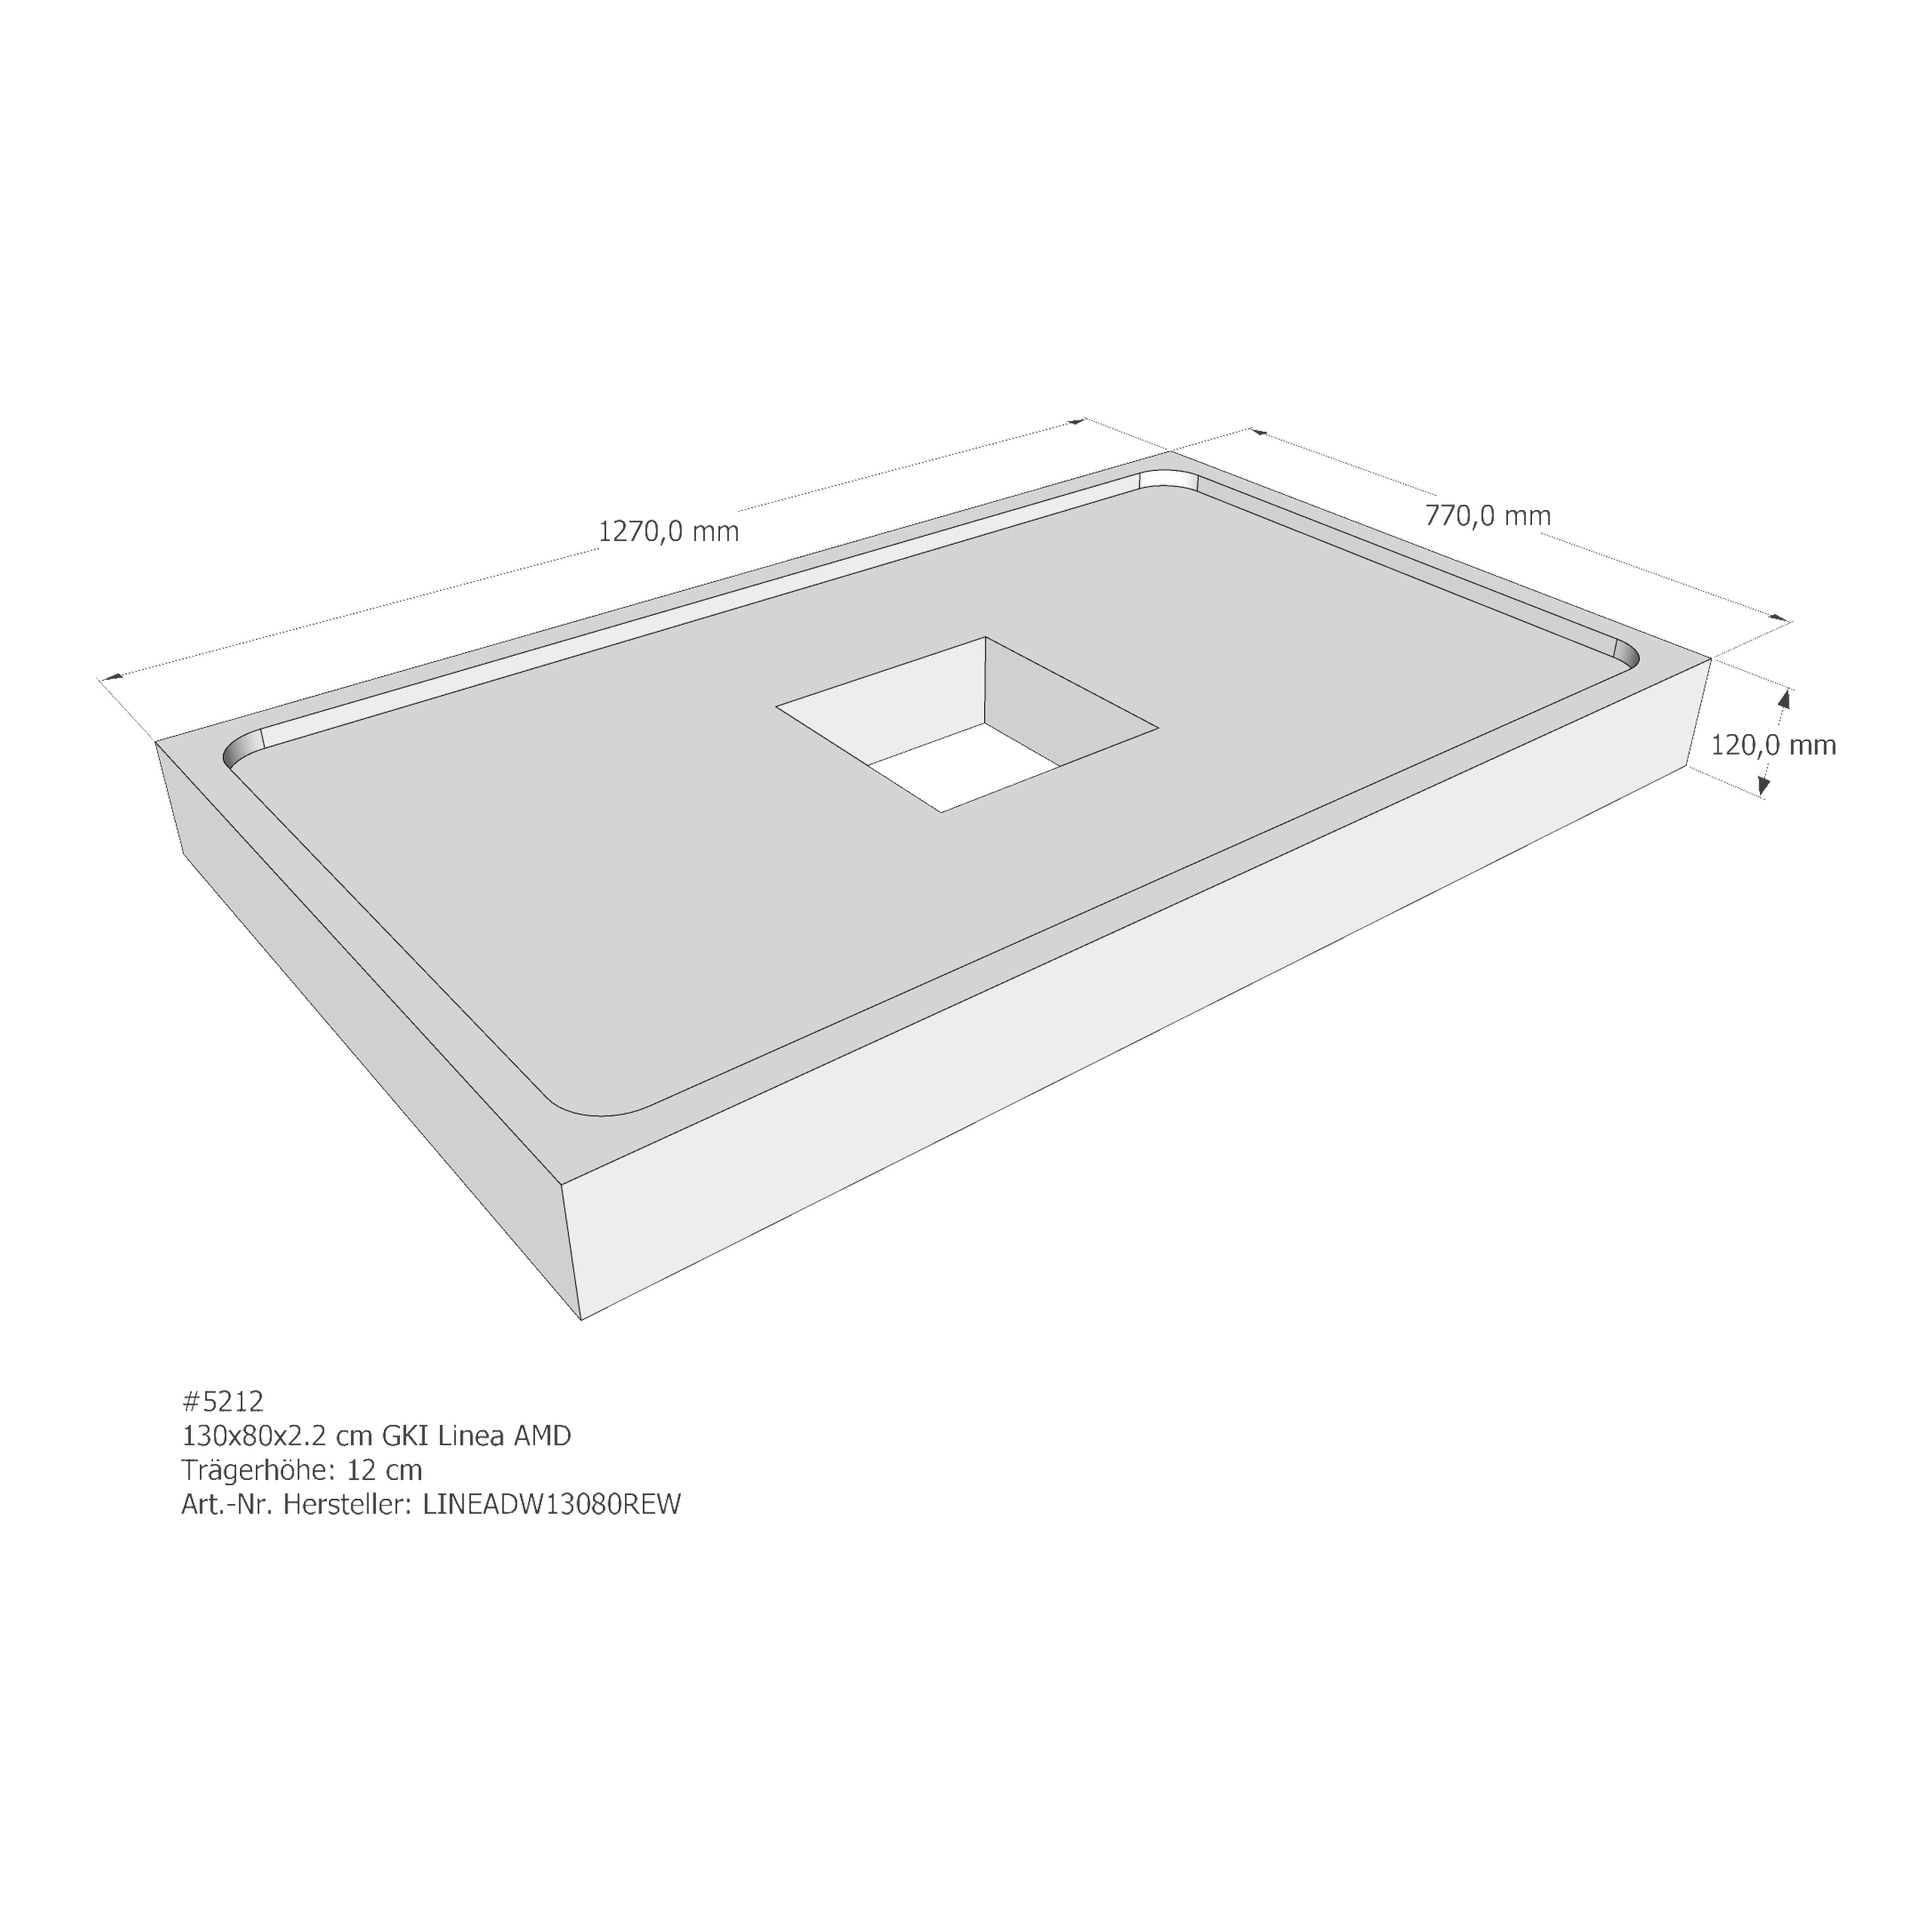 Duschwannenträger für GKI Linea 130 × 80 × 2,2 cm